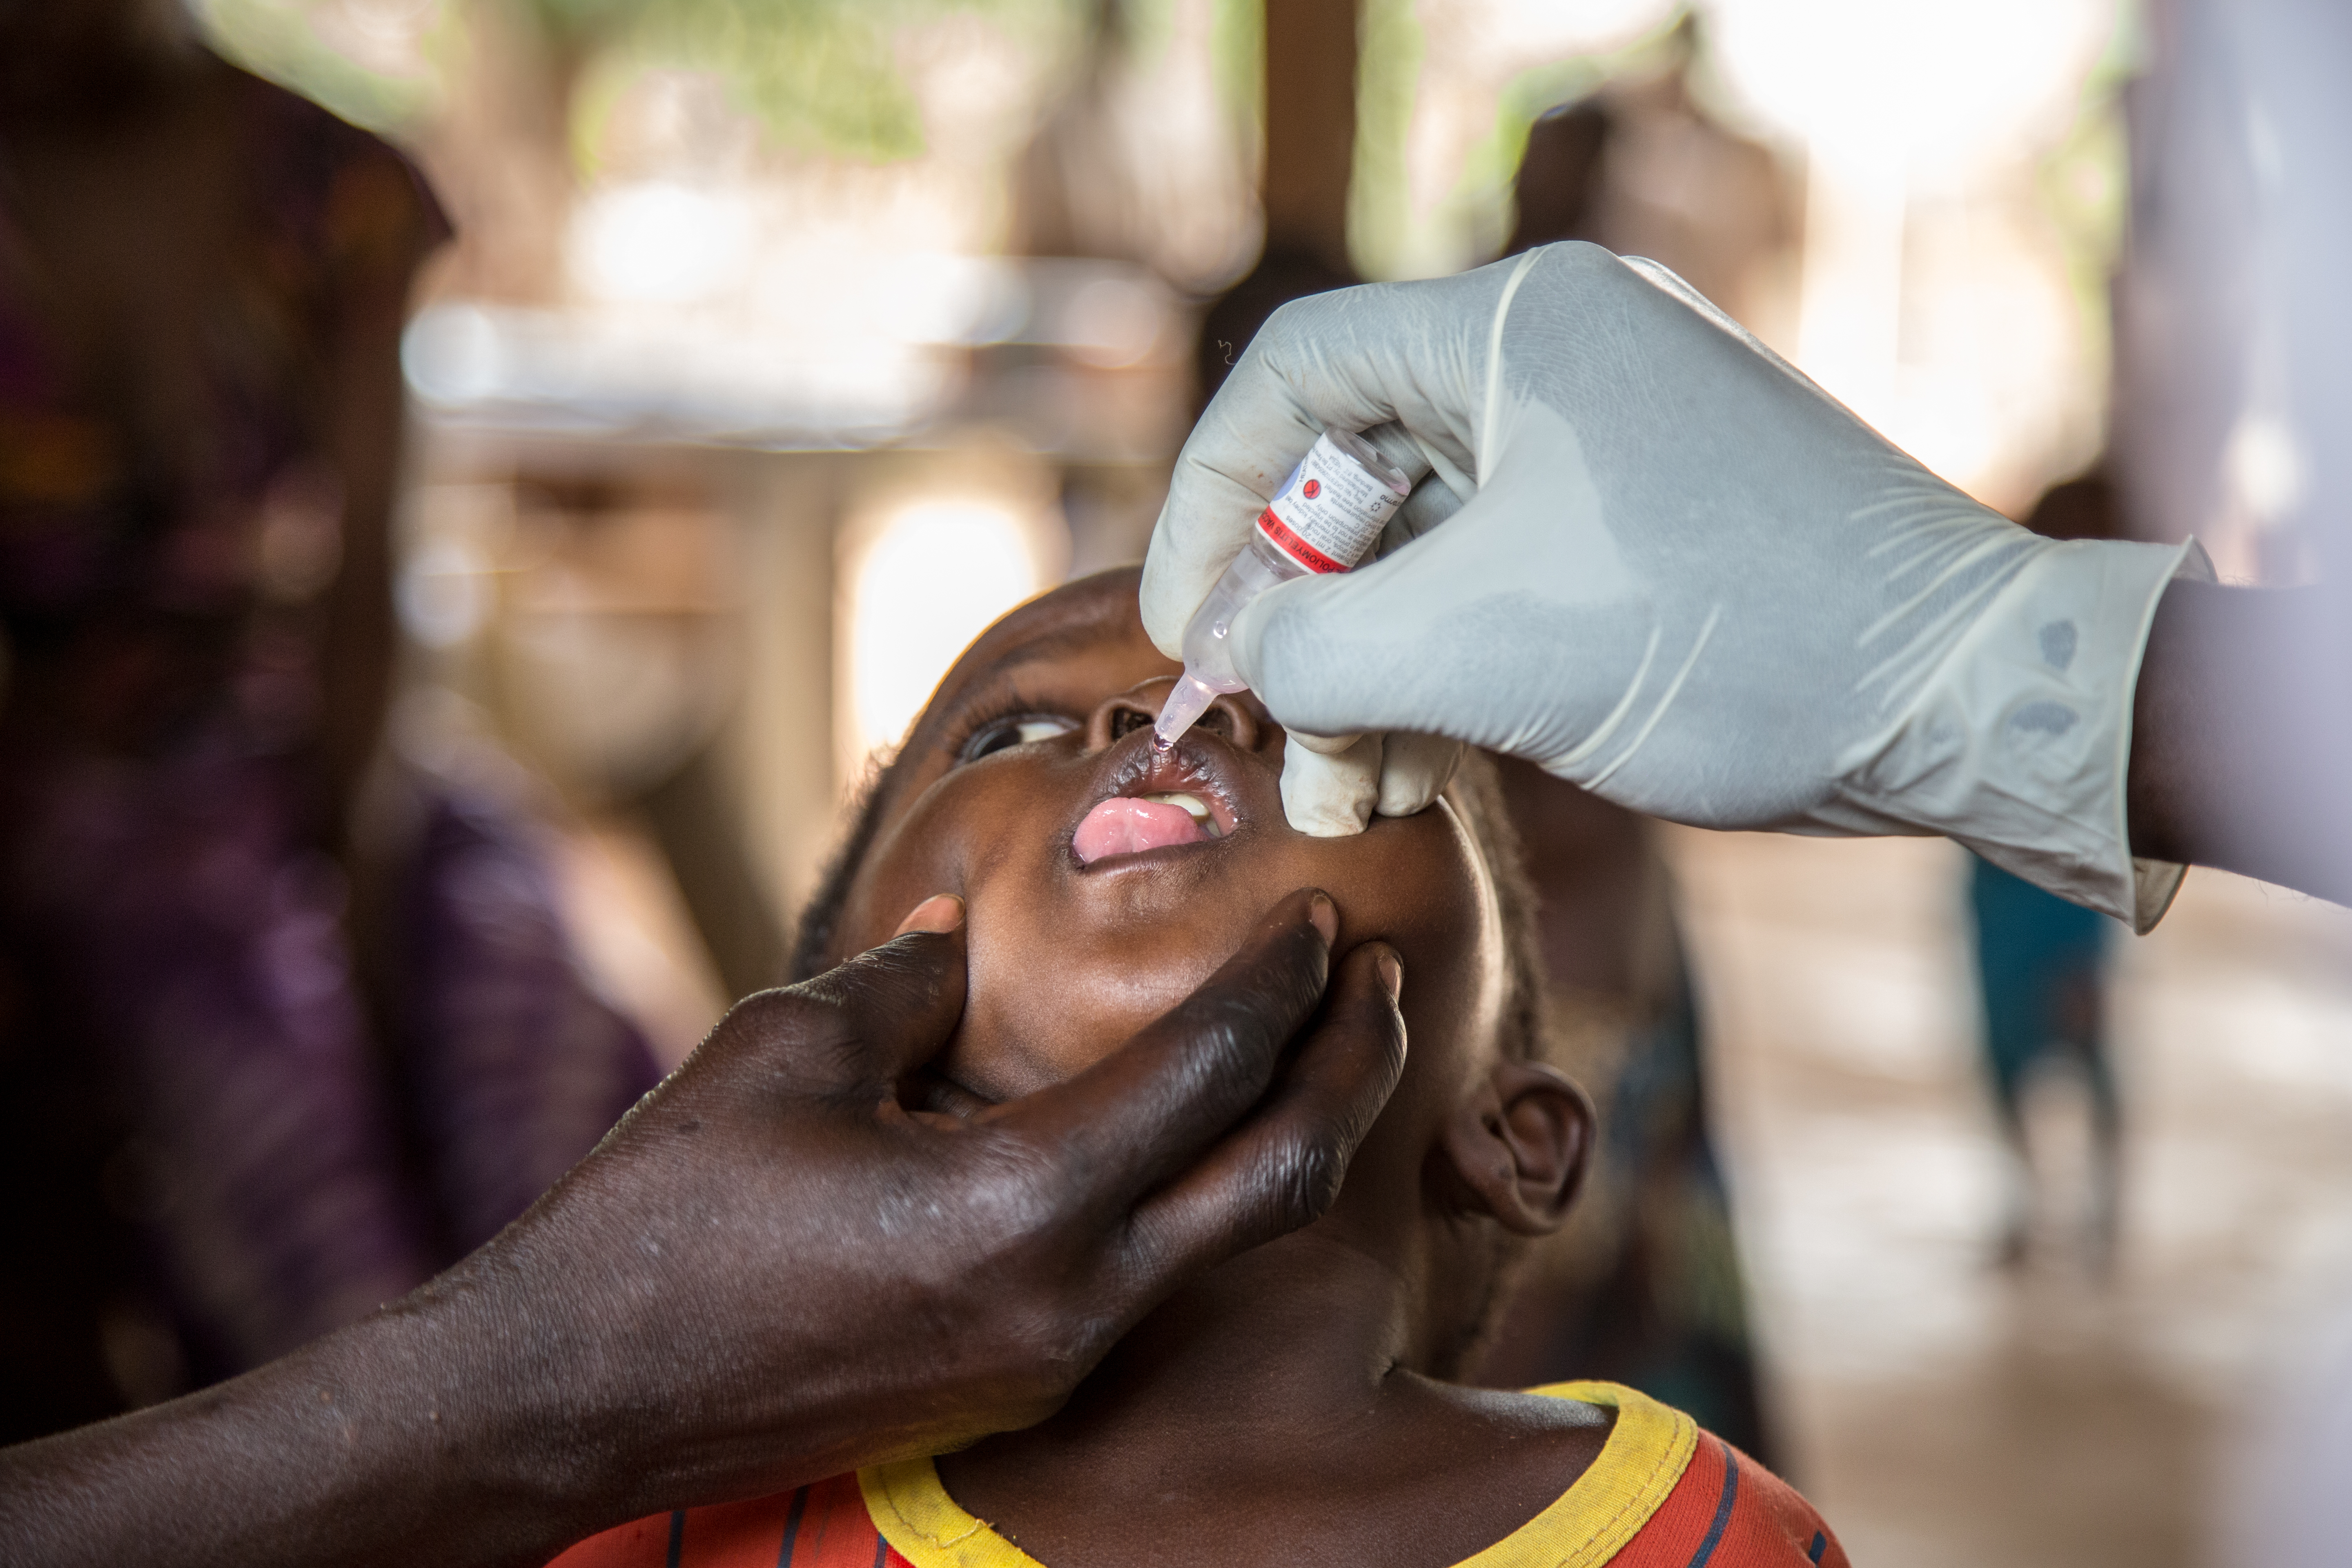 Une campagne de vaccination en République centrafricaine. L'objectif? Vacciner autant d'enfants que possible contre certaines des maladies les plus courantes.